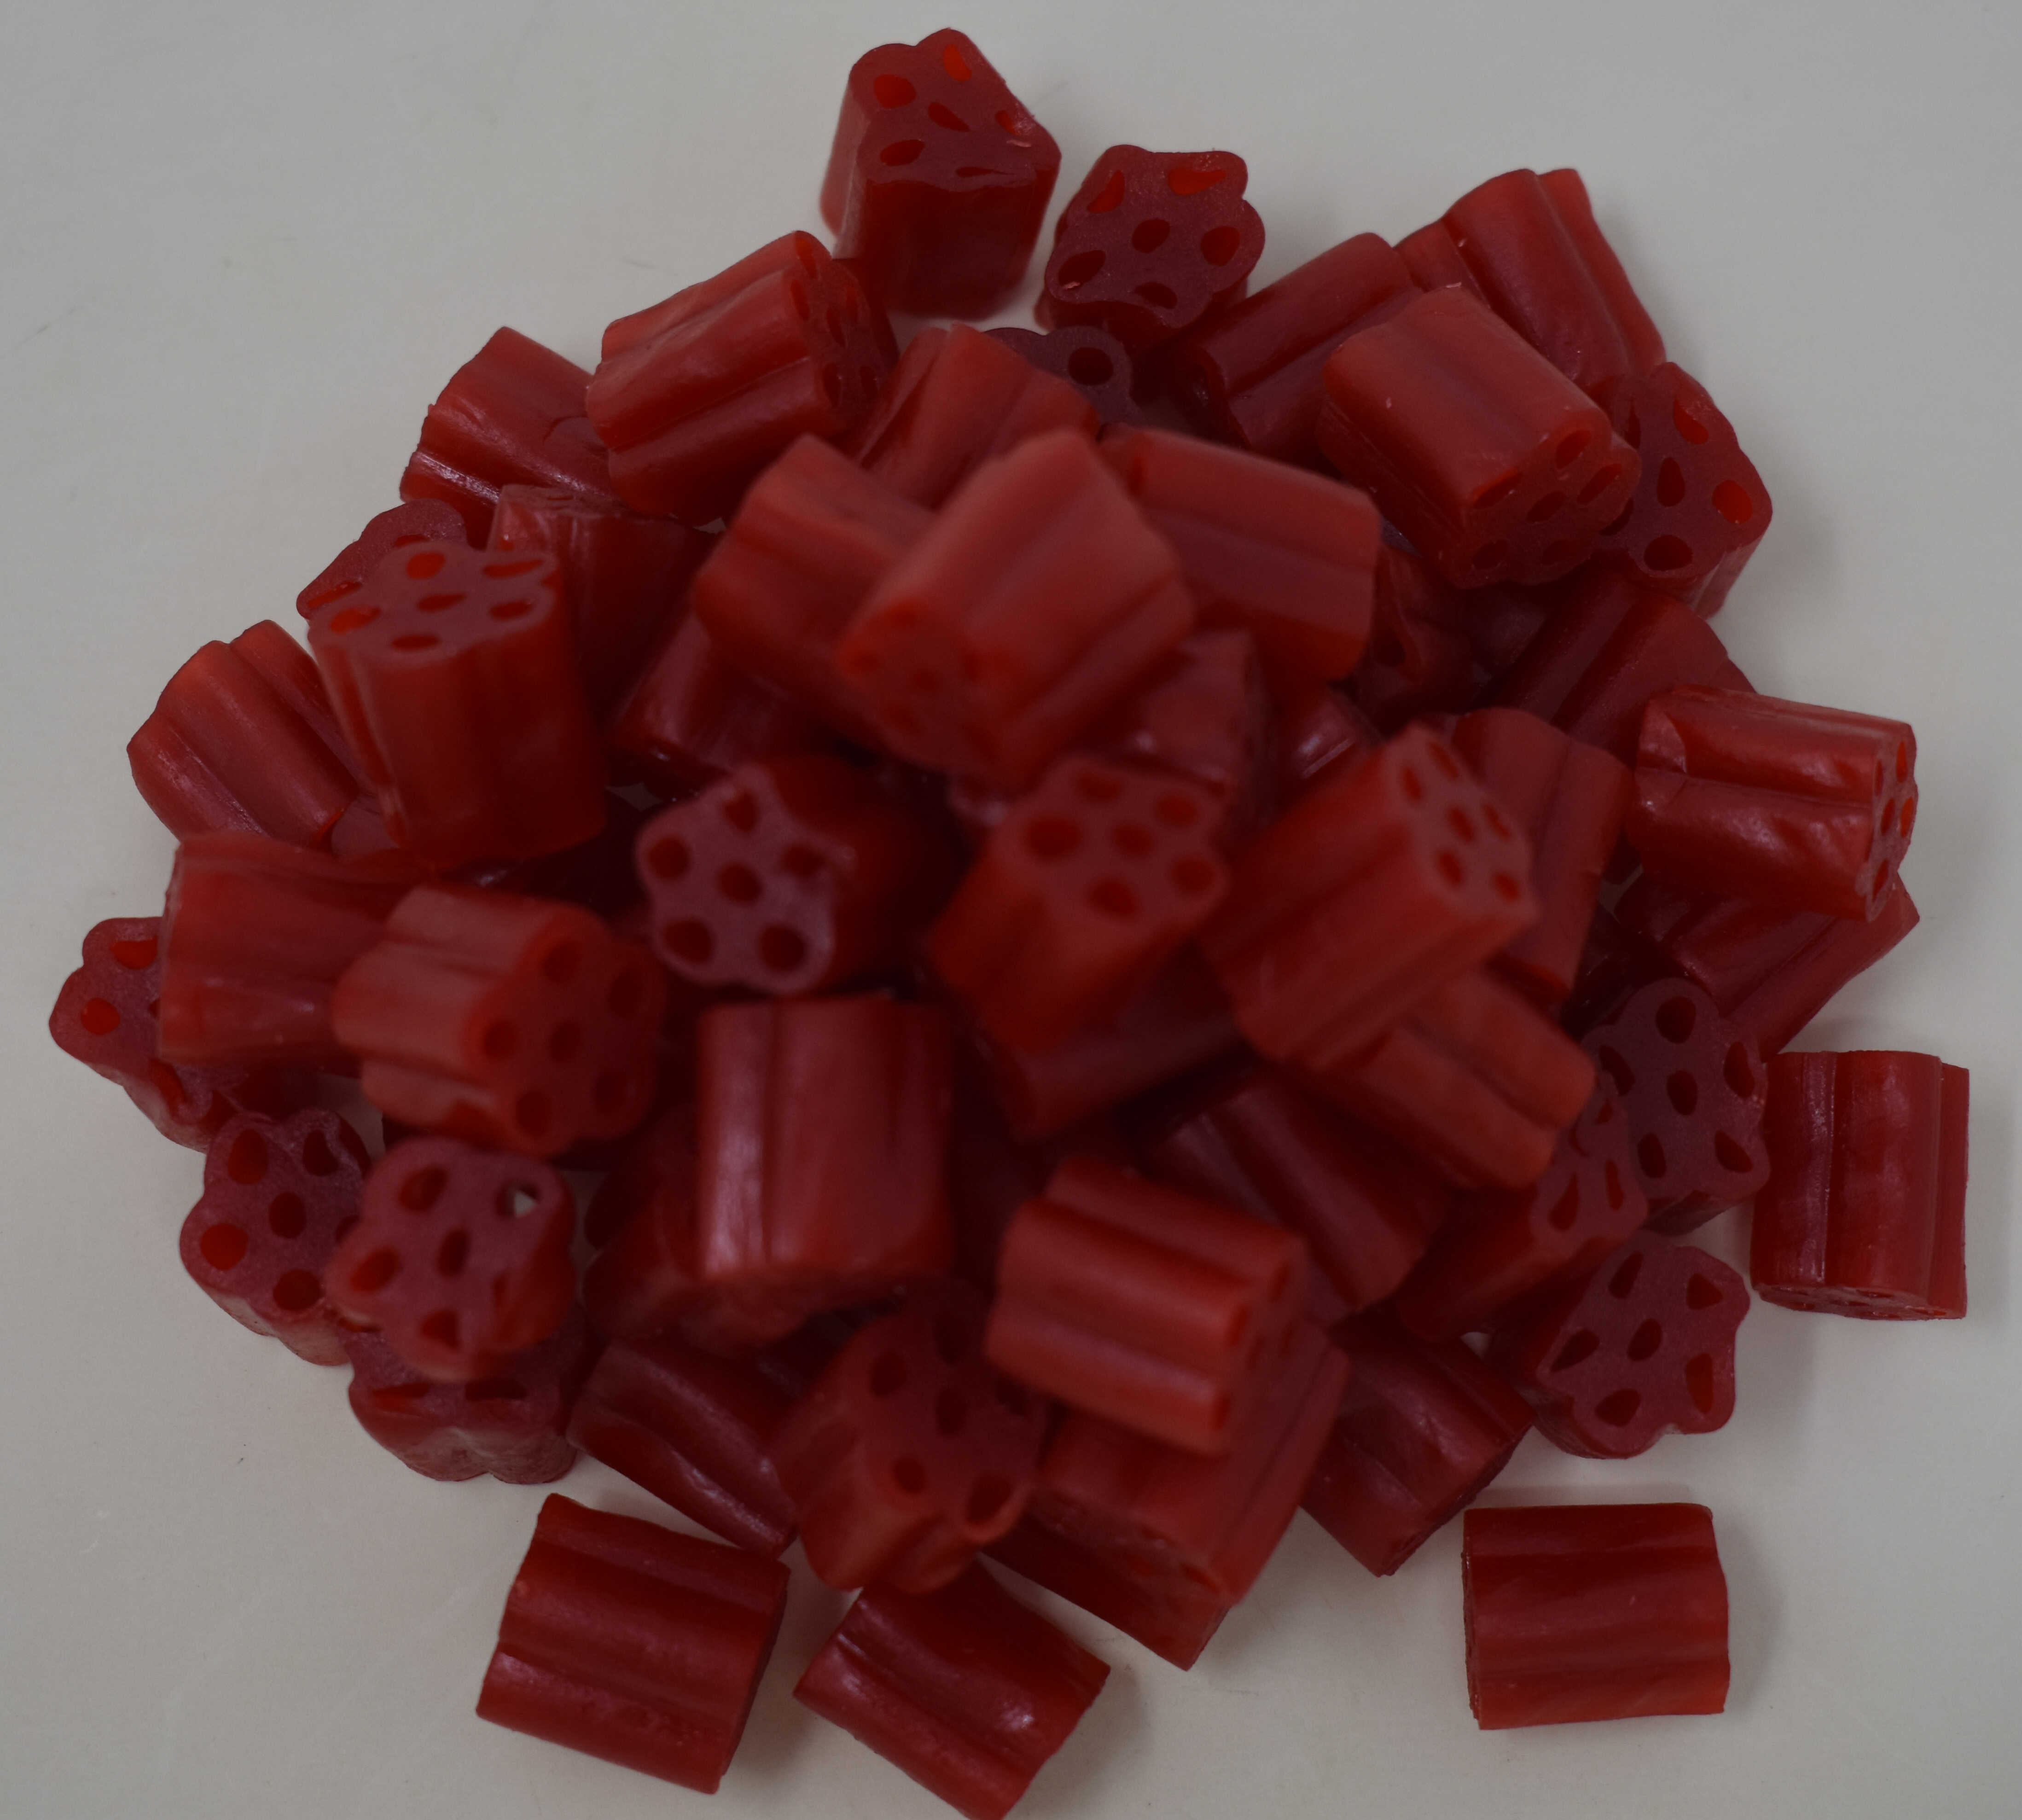 Red Cherry Licorice Nibs Bites - Top Photo